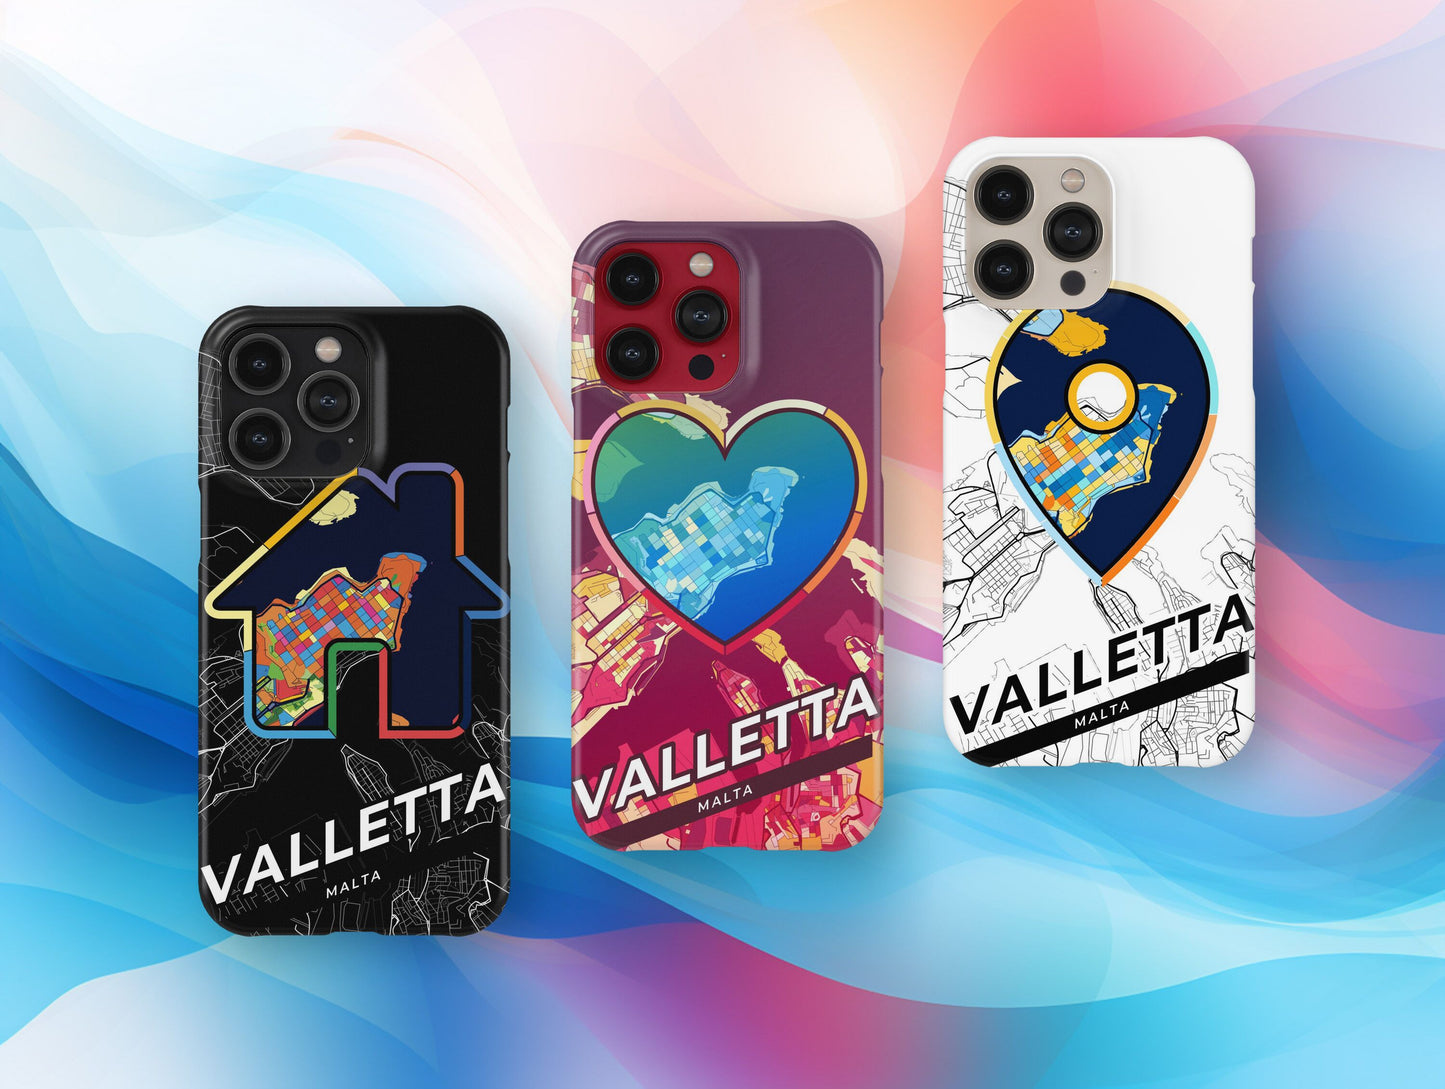 Valletta Malta slim phone case with colorful icon